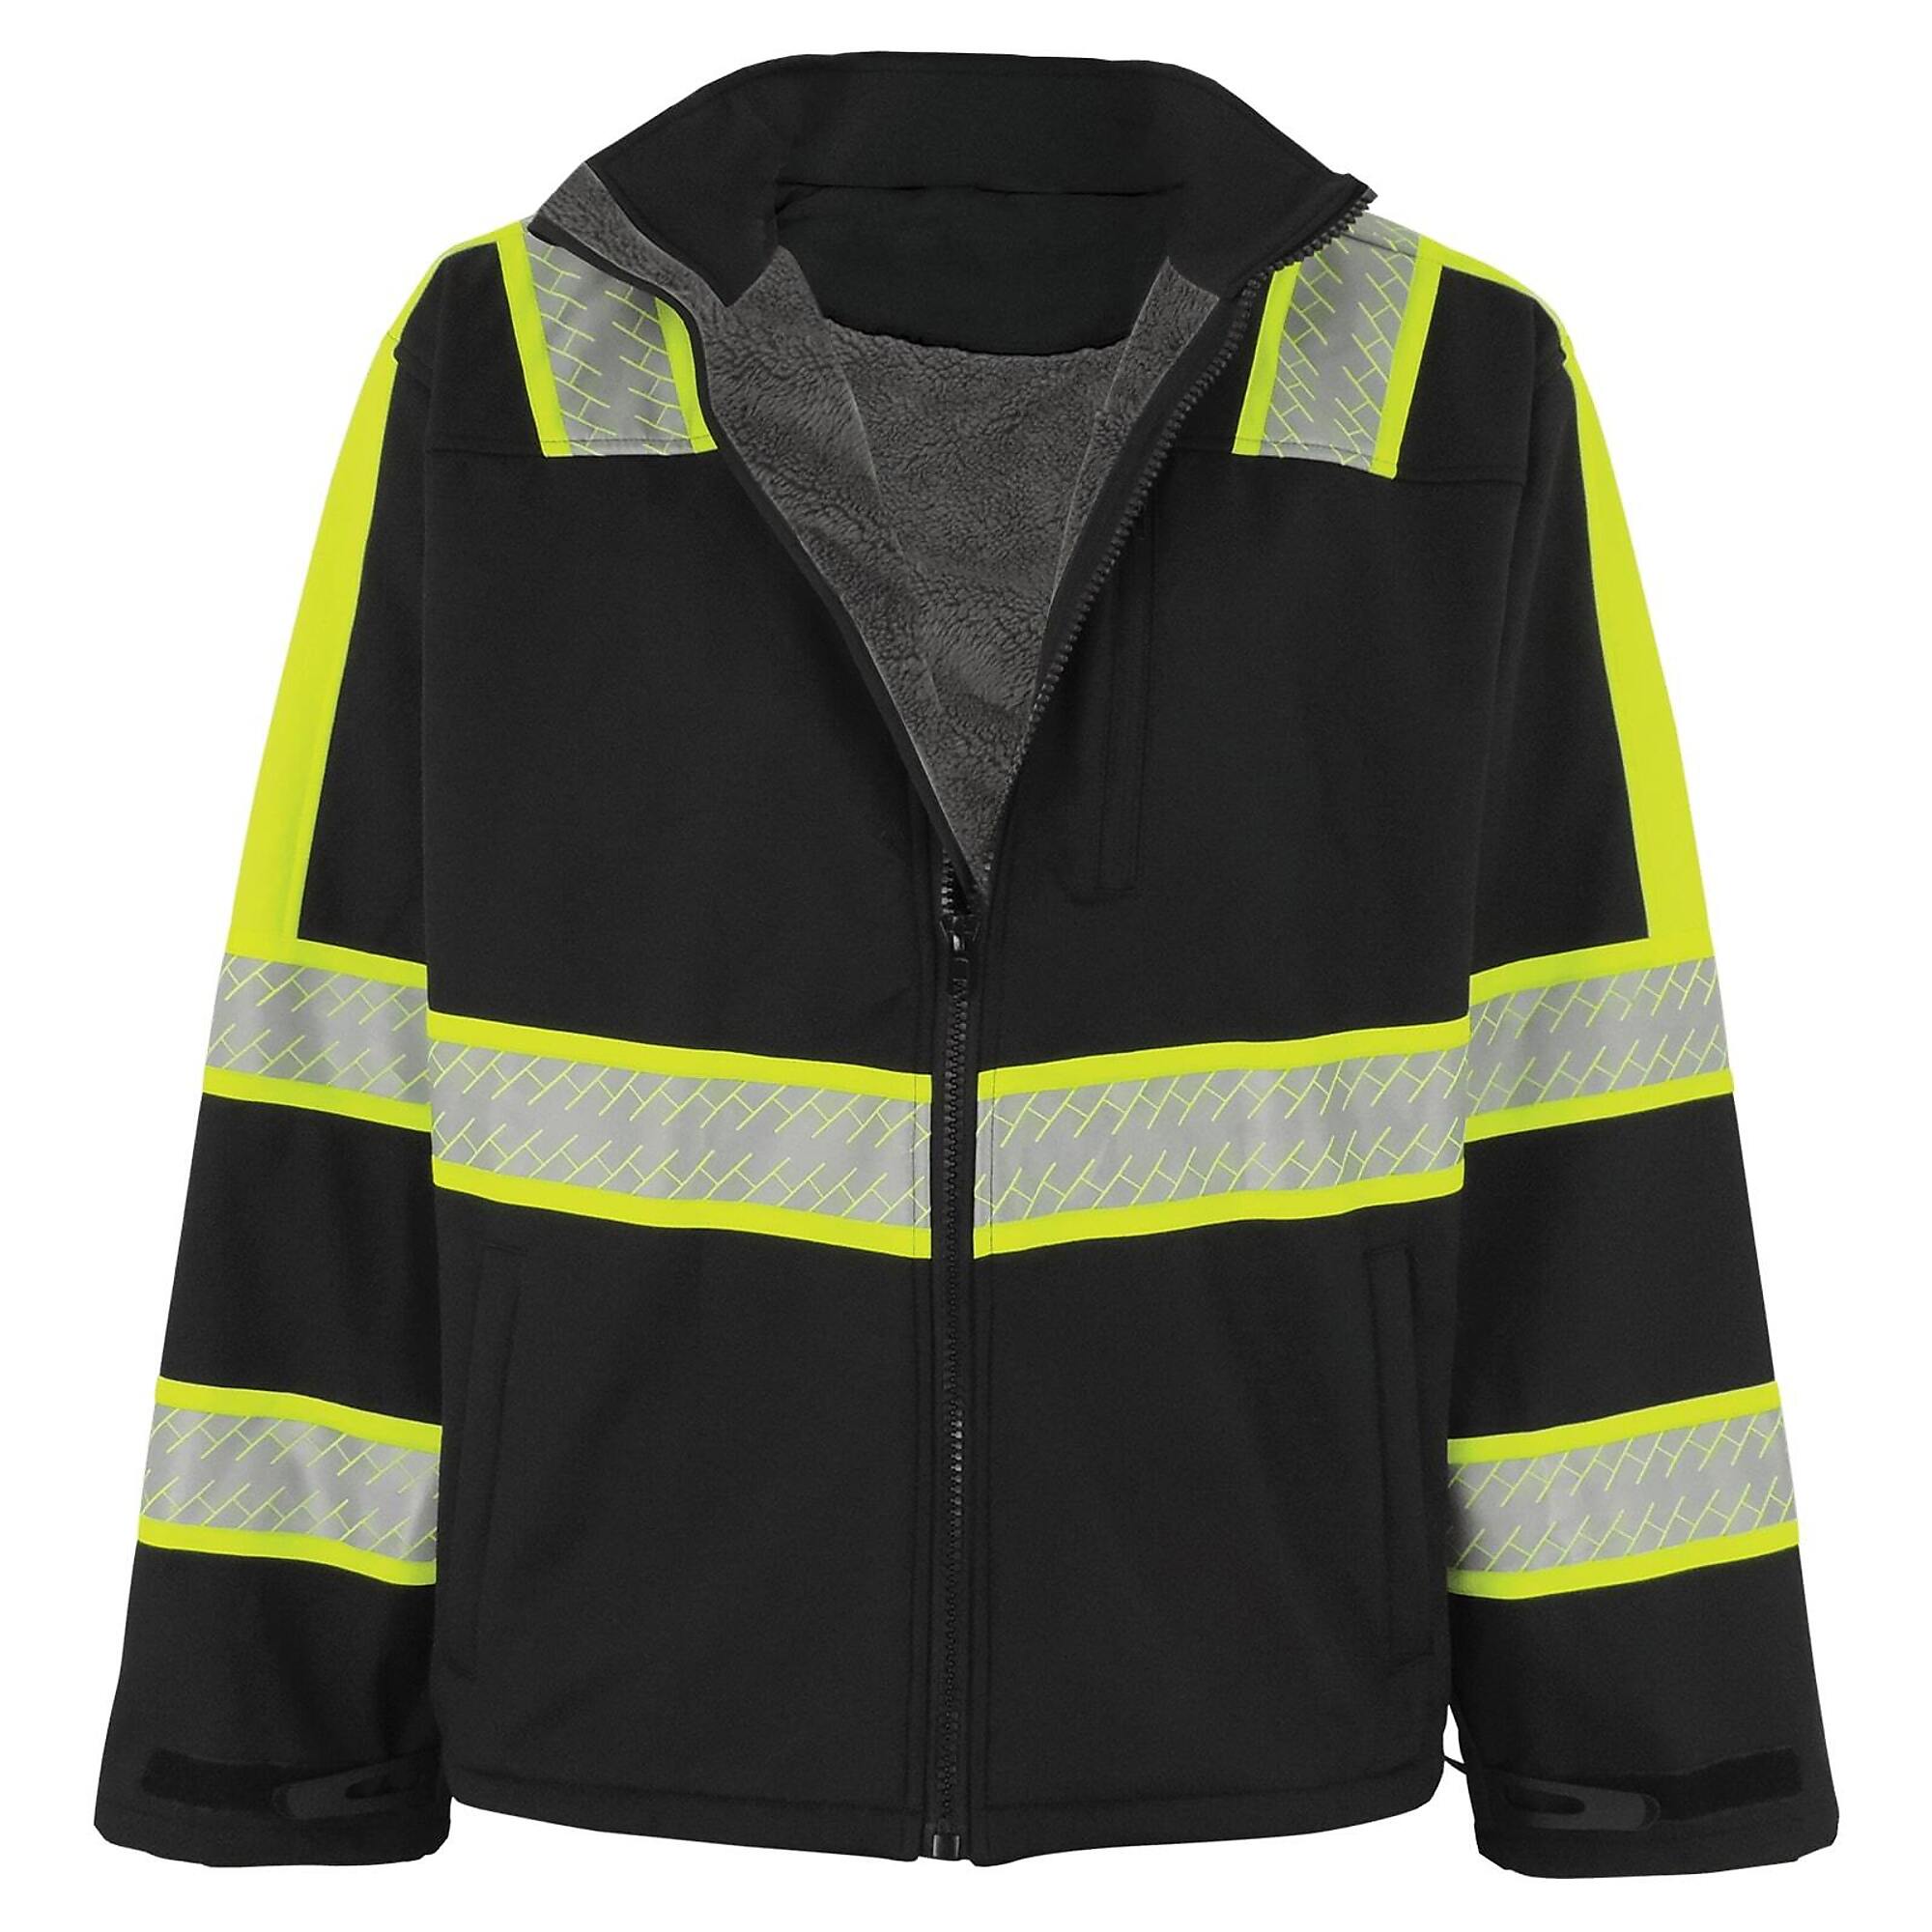 FrogWear, Prem Enhanced Visibility Black Sherpa-Lined Jacket, Size L, Color Black with Silver Reflective, Model EV-SJ1-L